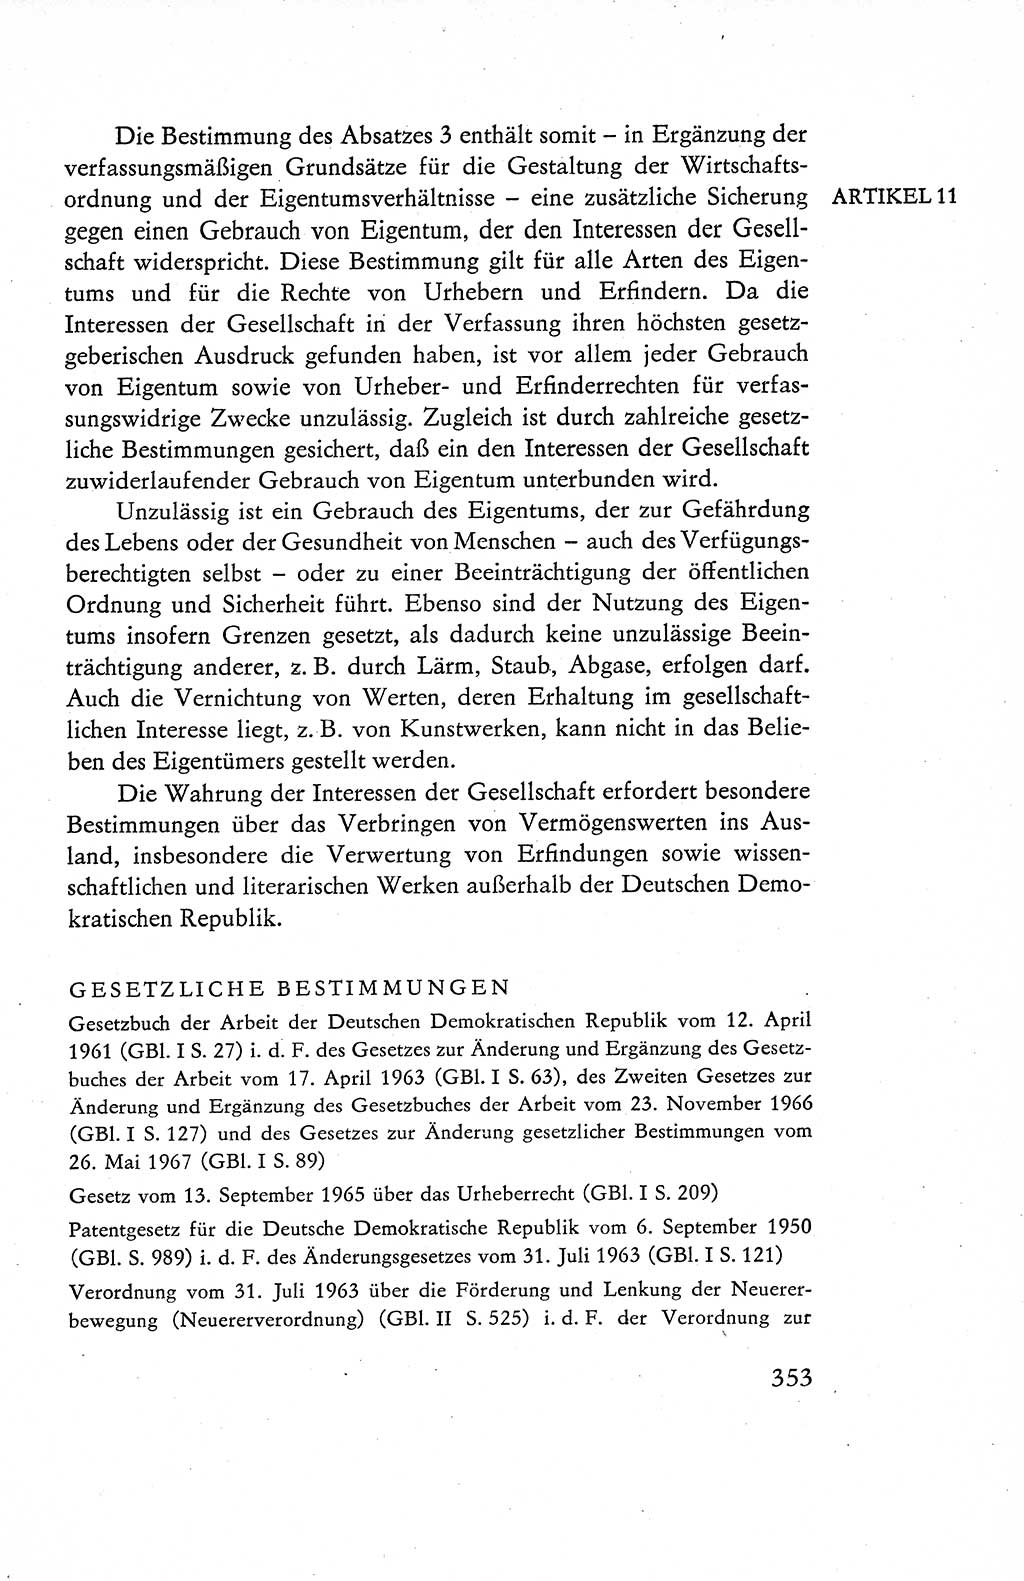 Verfassung der Deutschen Demokratischen Republik (DDR), Dokumente, Kommentar 1969, Band 1, Seite 353 (Verf. DDR Dok. Komm. 1969, Bd. 1, S. 353)